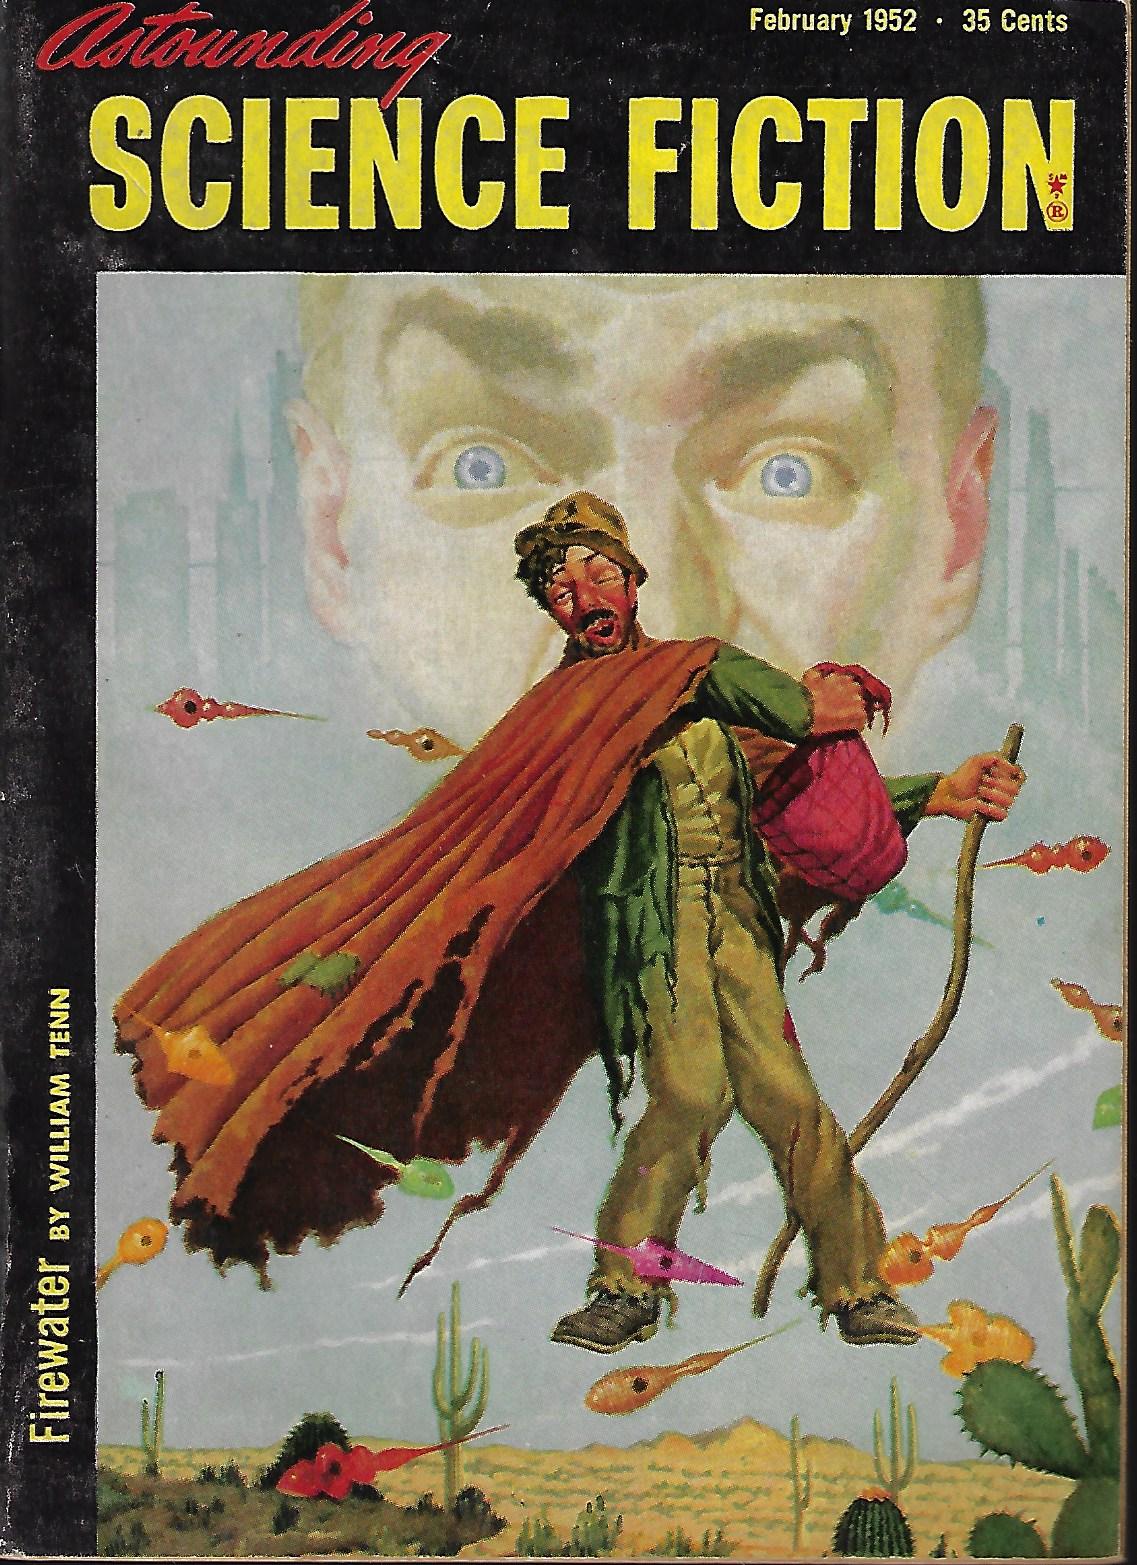 ASTOUNDING (WILLIAM TENN; JAMES BLISH; HOWARD L. MYERS; CRISPIN KIM-BRADLEY) - Astounding Science Fiction: February, Feb. 1952